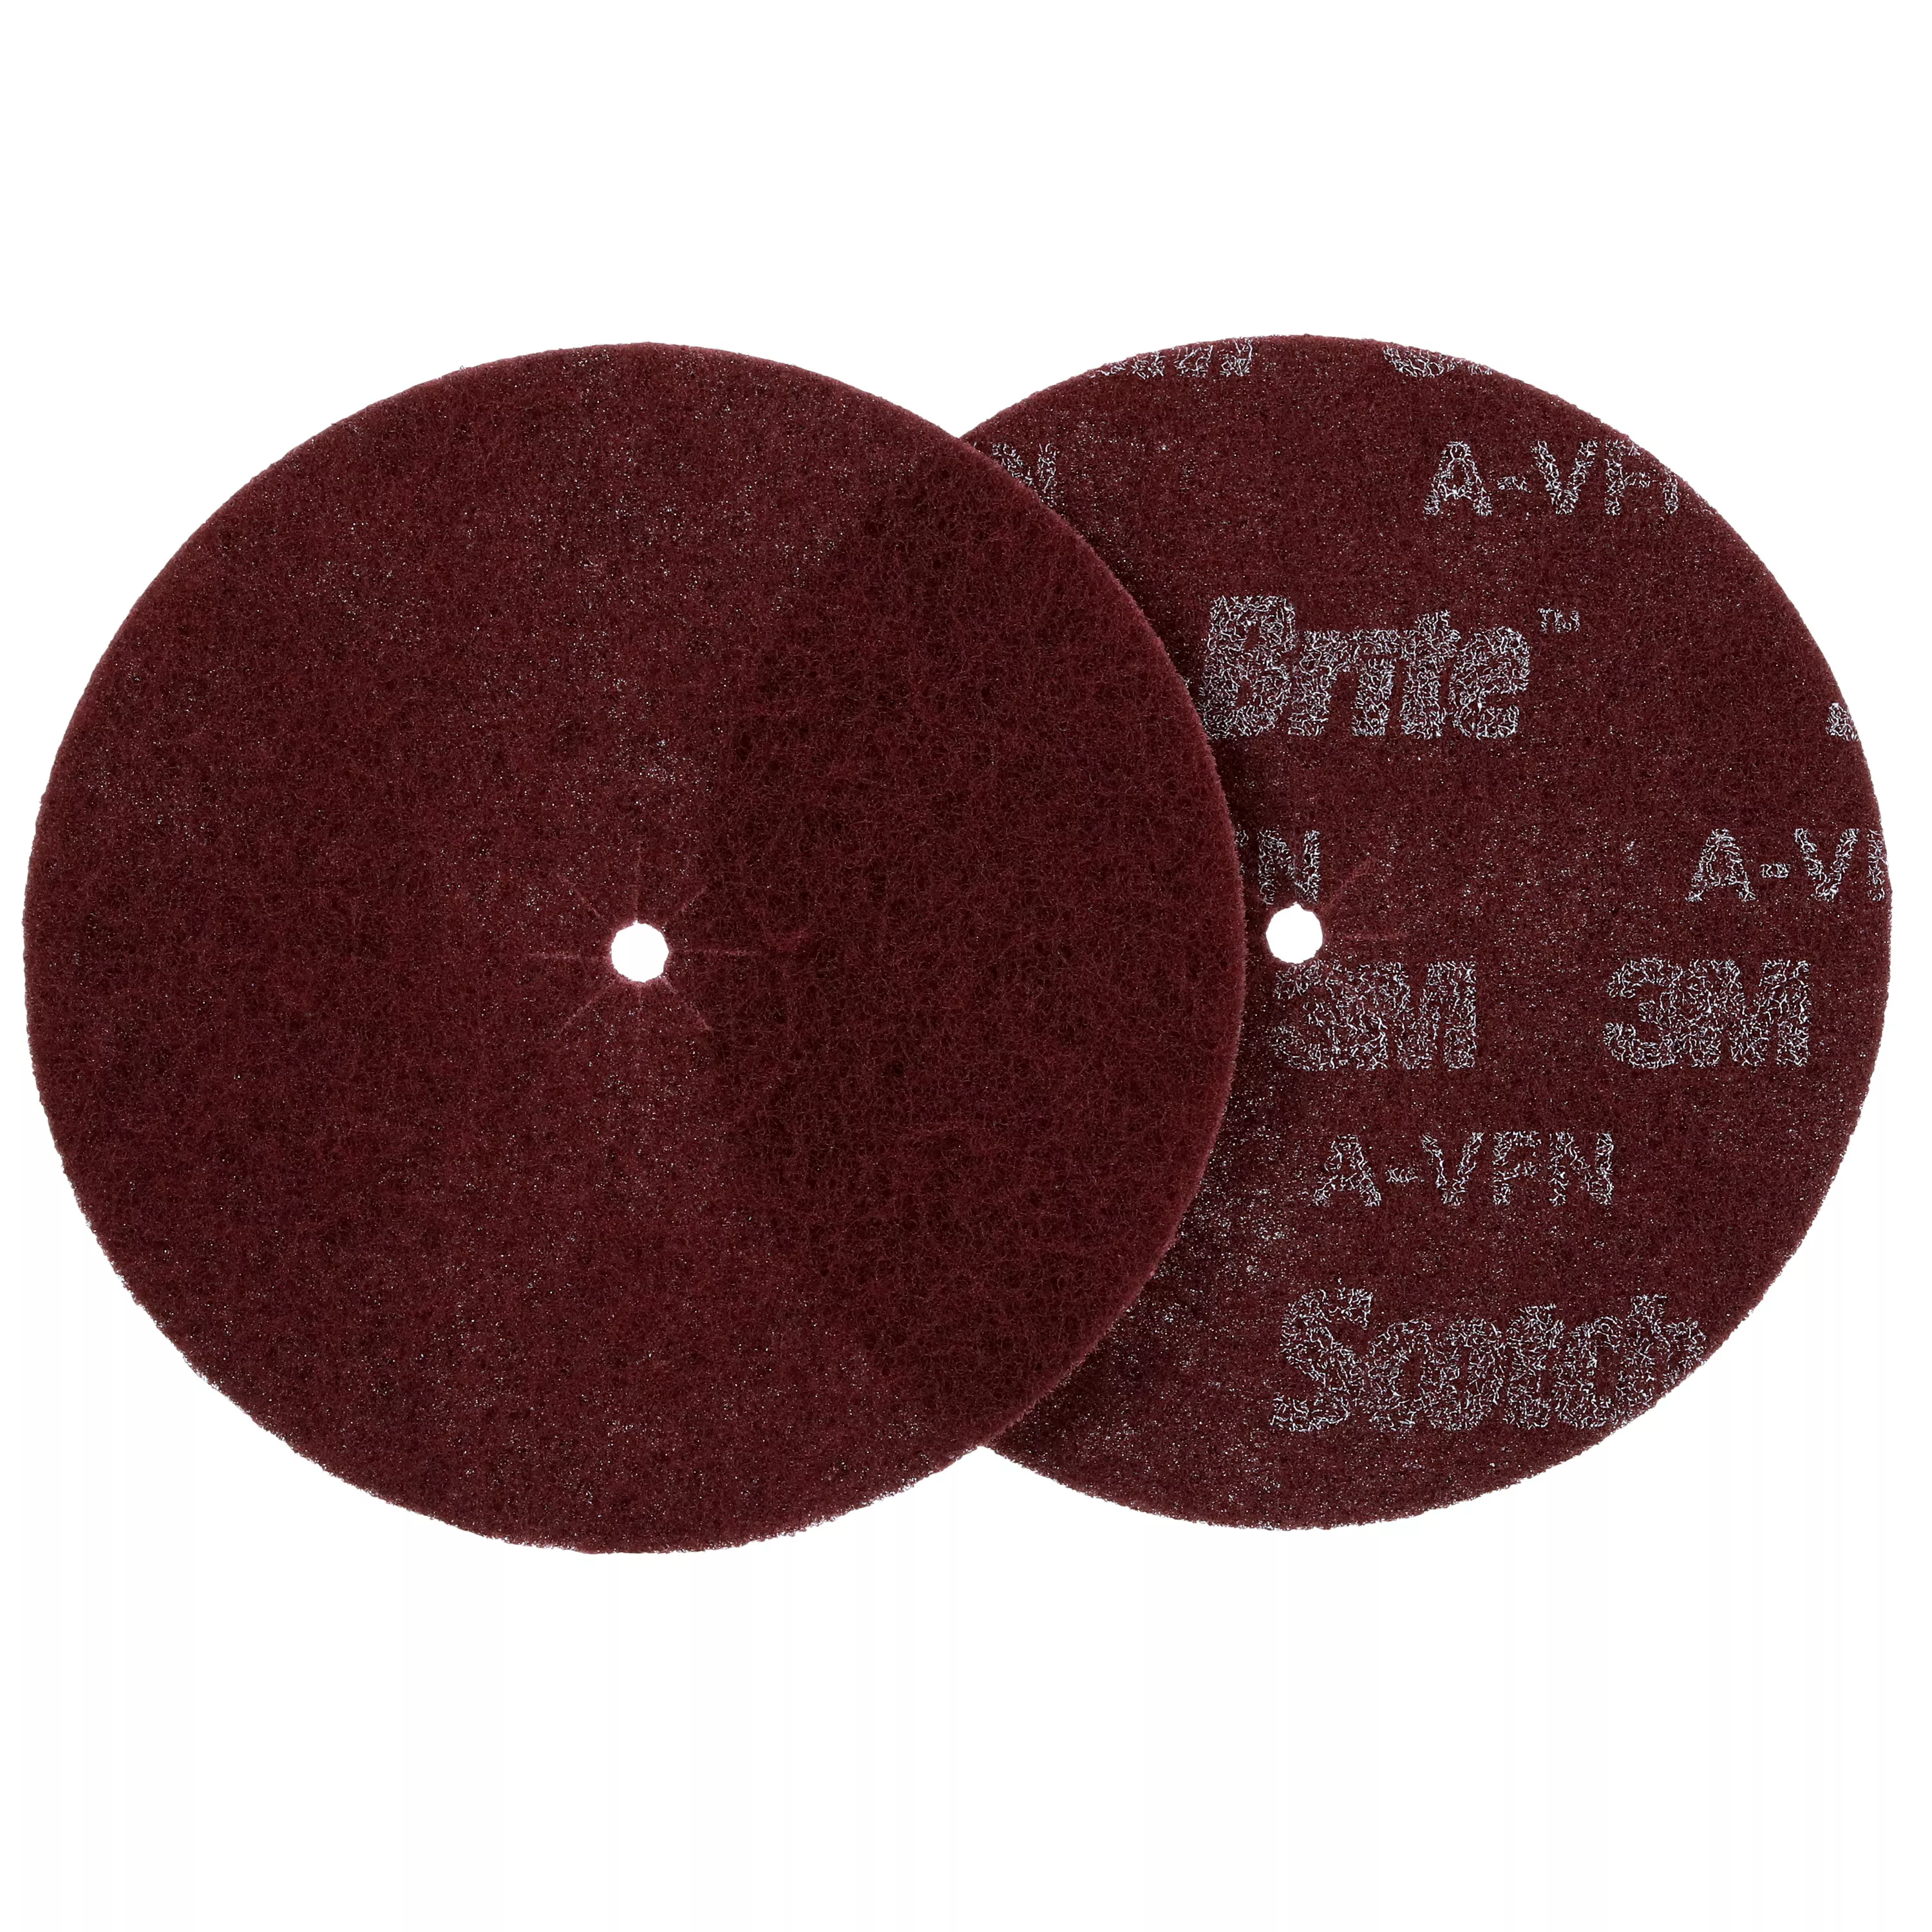 3M™ Scotch-Brite™ Edger Disc Pad 03648, 7 in x .3125 in